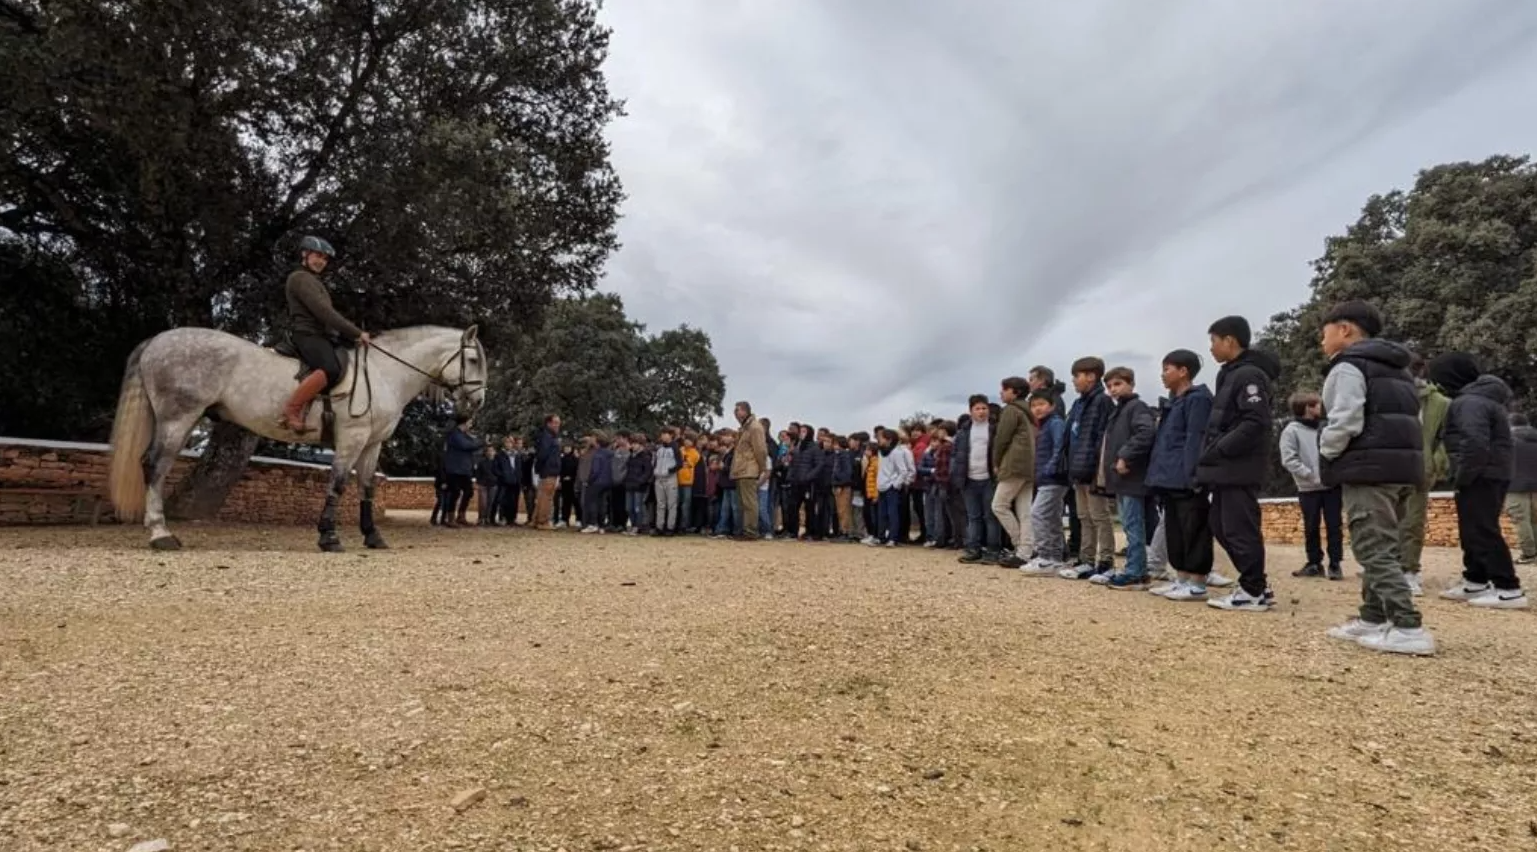 La visita de alumnos a una ganadería de tauromaquia, en una imagen difundida por la Diputación de Málaga.